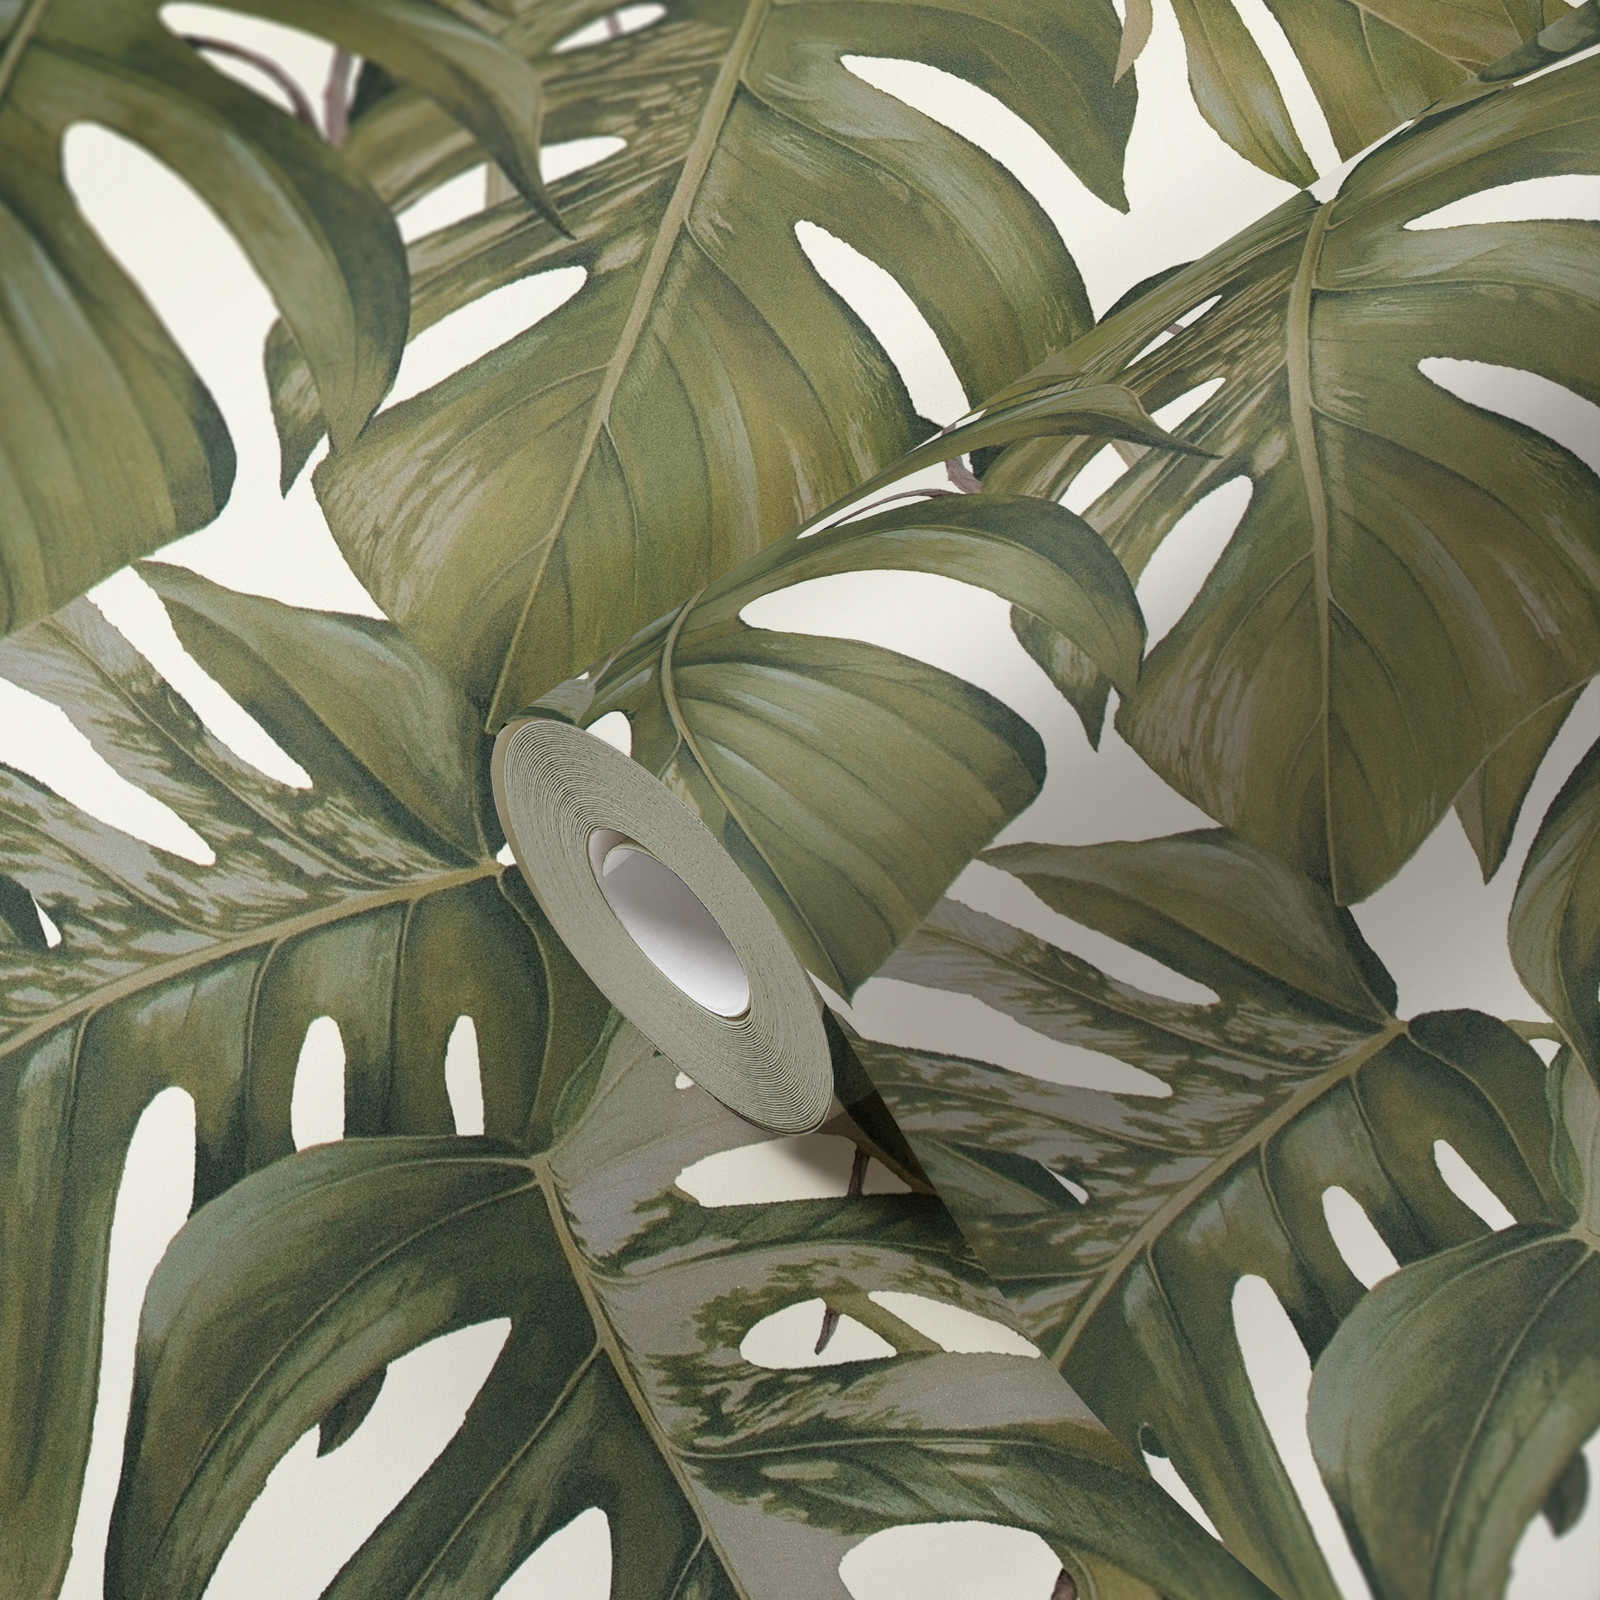             Vliestapete Monstera Blätter Muster – Grau, Grün, Weiß
        